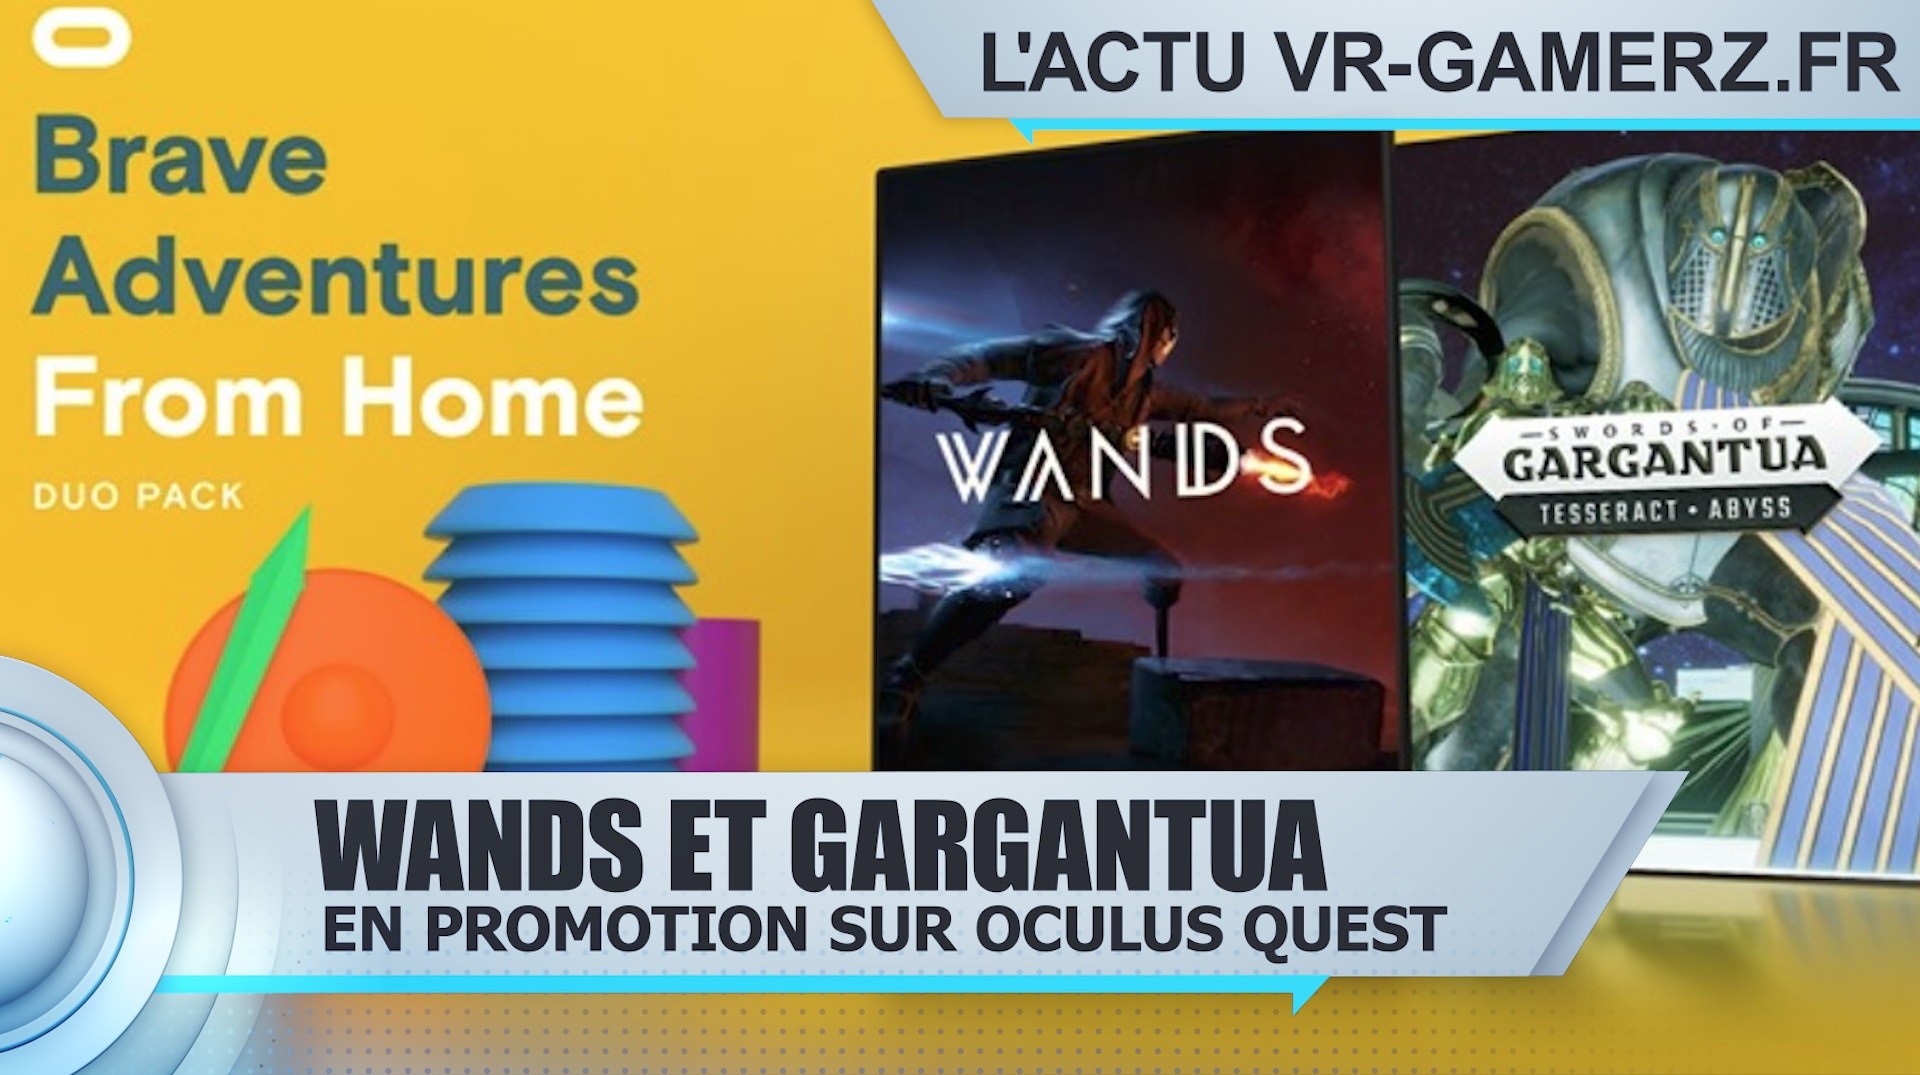 Wands et Gargantua en promotion sur Oculus quest